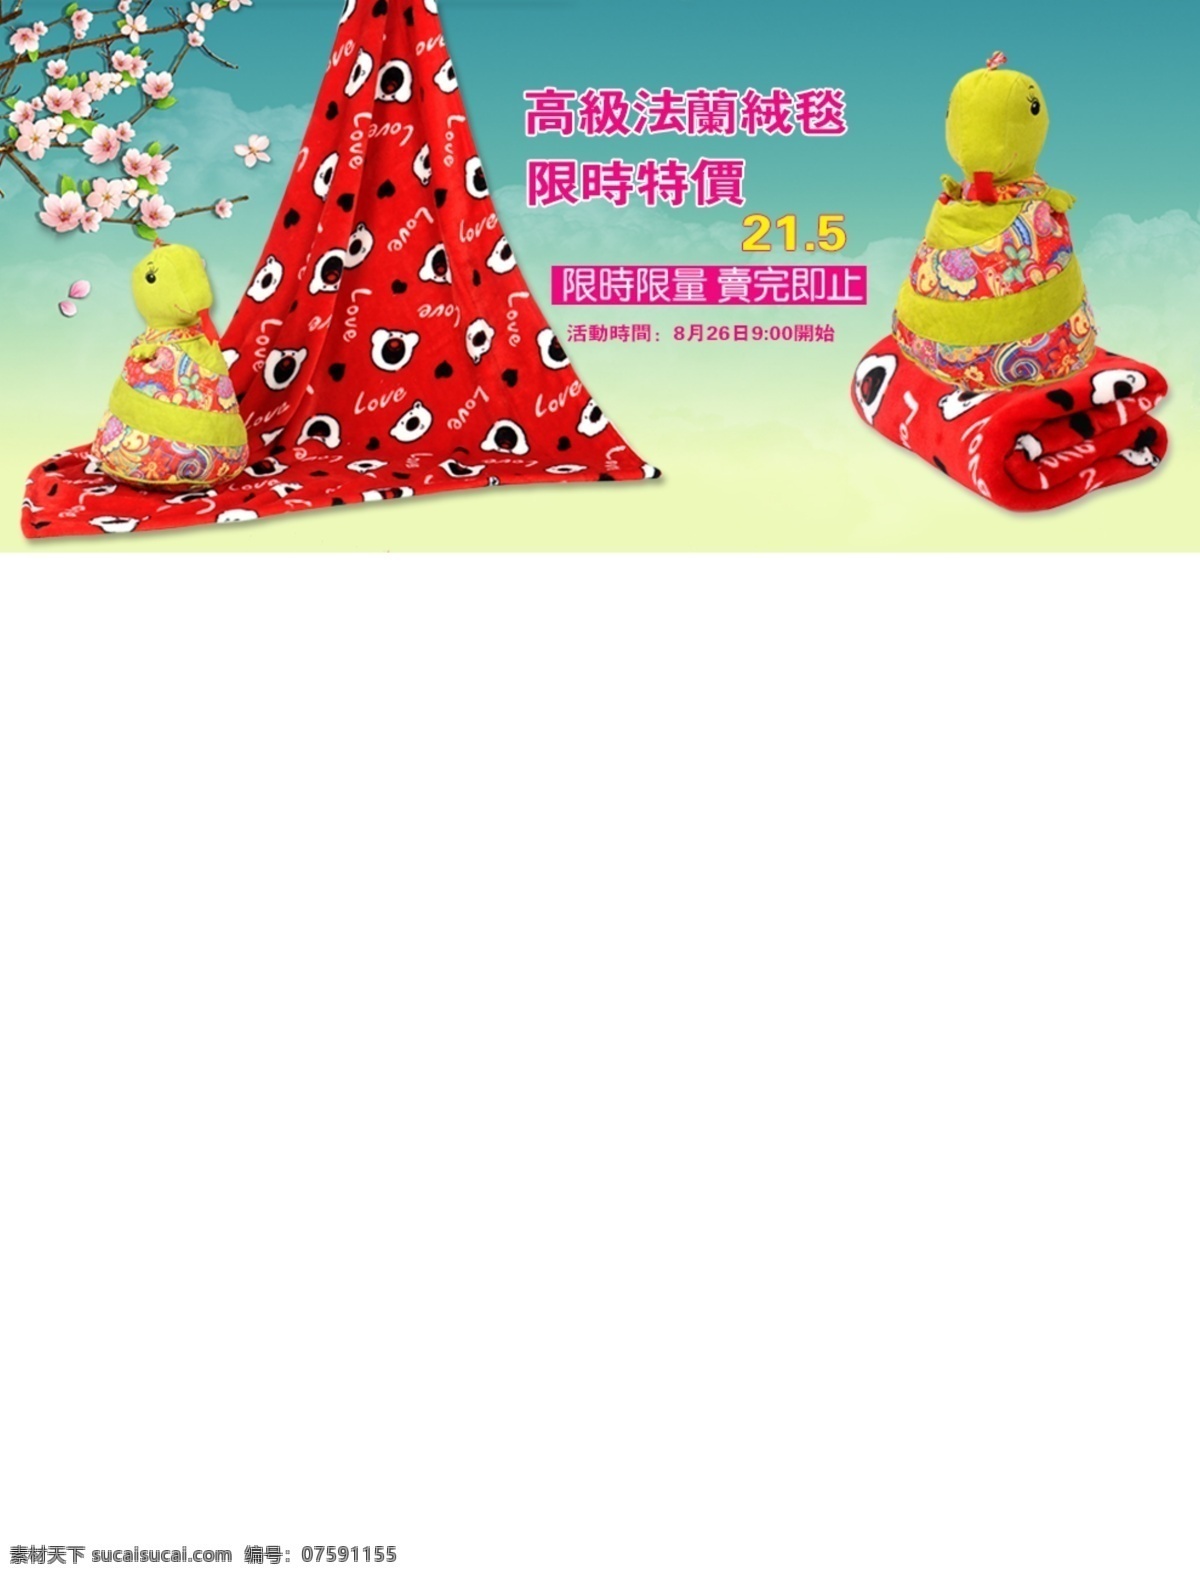 高清 淘宝 布艺玩具 促销 海报 990页面 红色